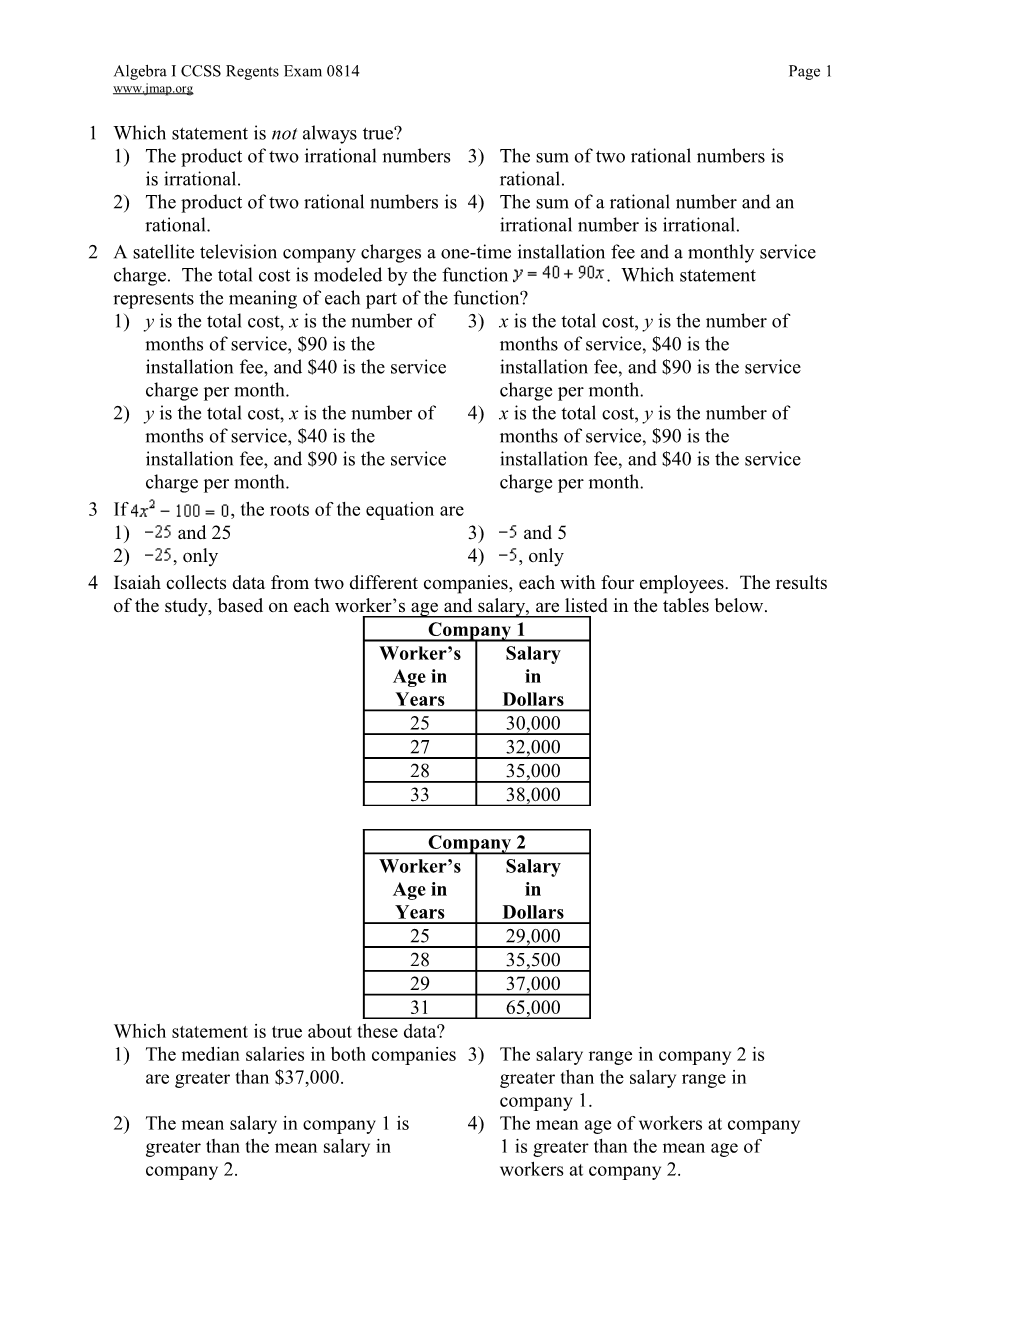 Algebra ICCSS Regents Exam 0814Page 1